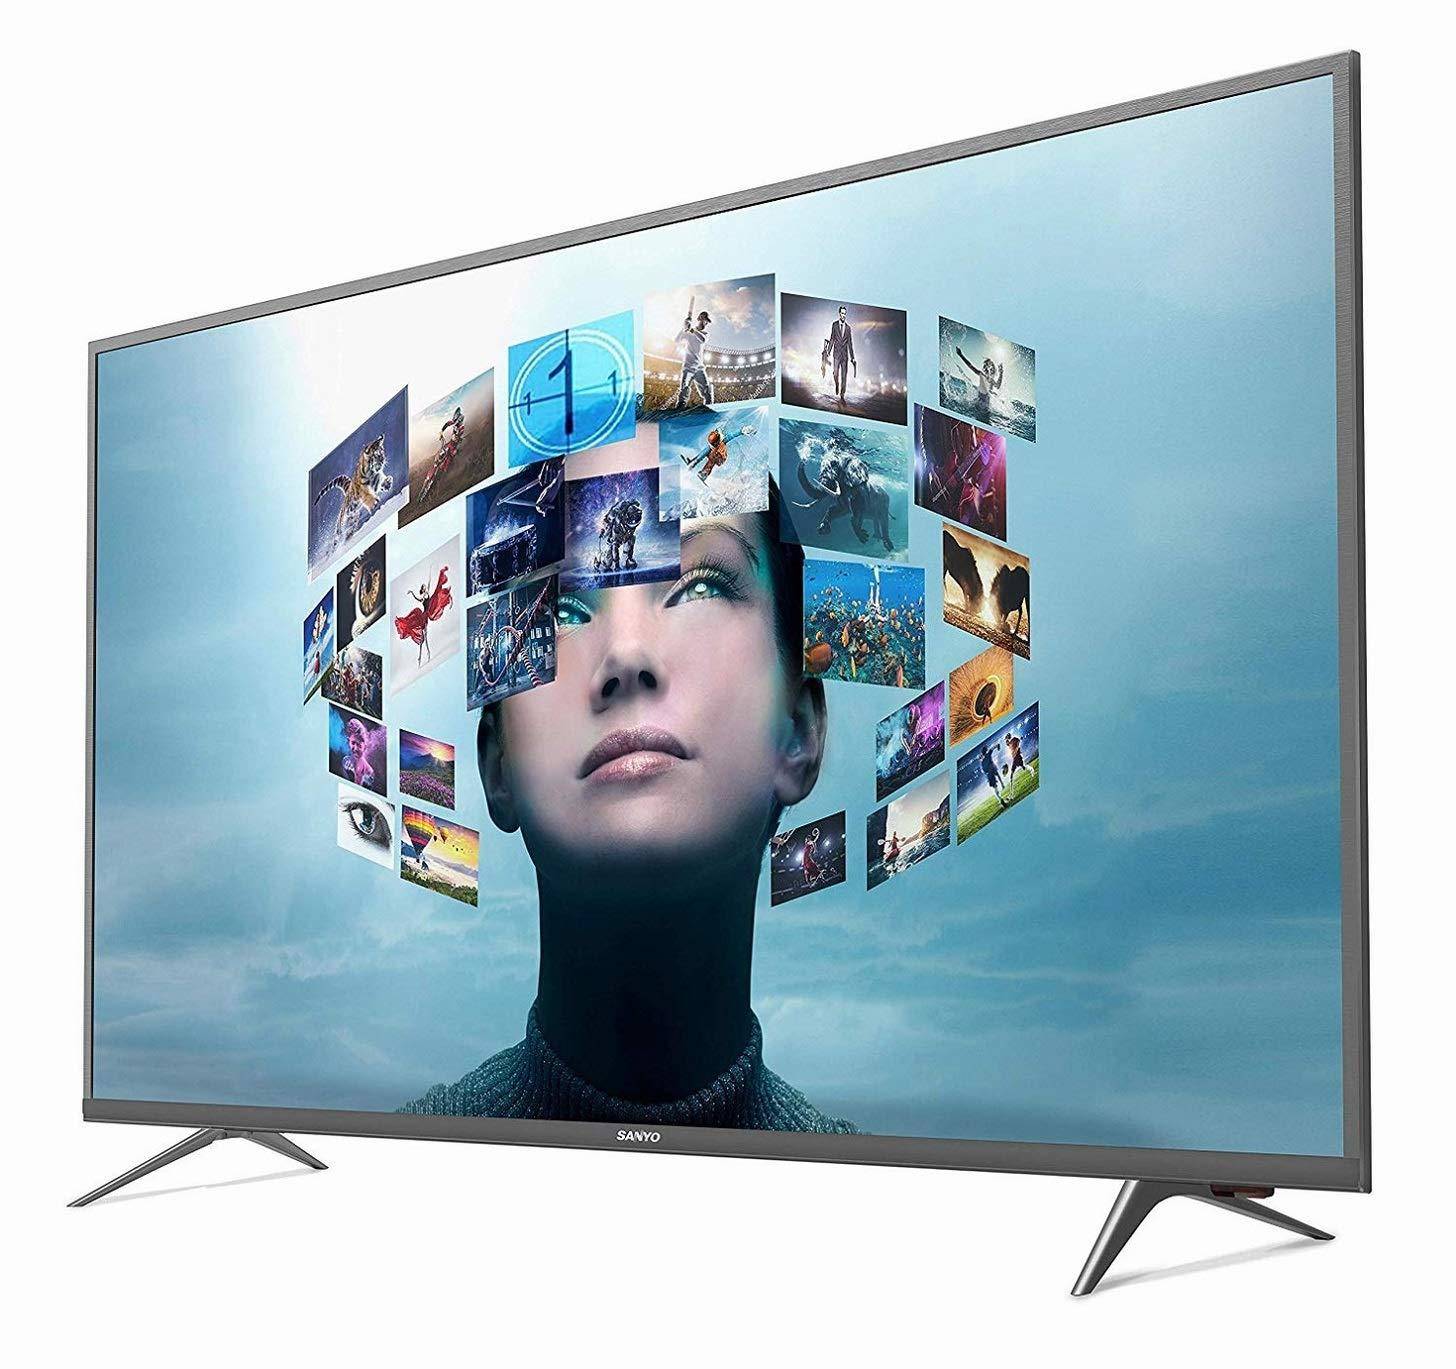 पैनासोनिक ने भारत में लॉन्च किये तीन नये 4K एंड्रॉइड टीवी